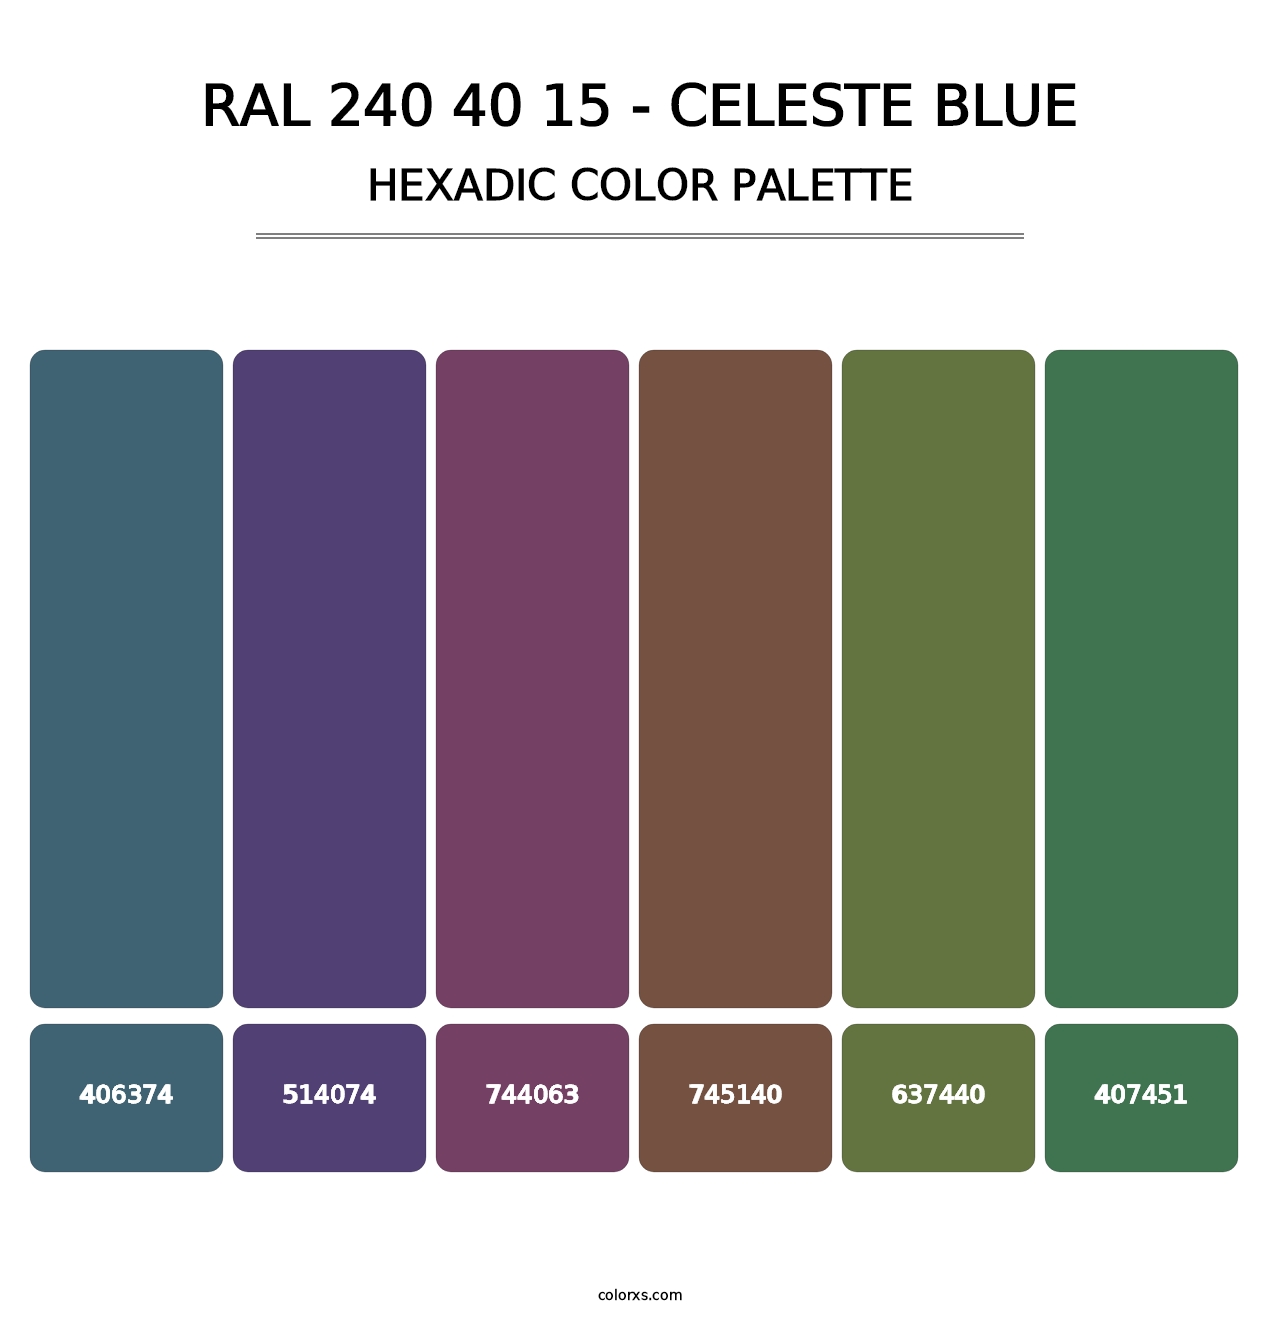 RAL 240 40 15 - Celeste Blue - Hexadic Color Palette